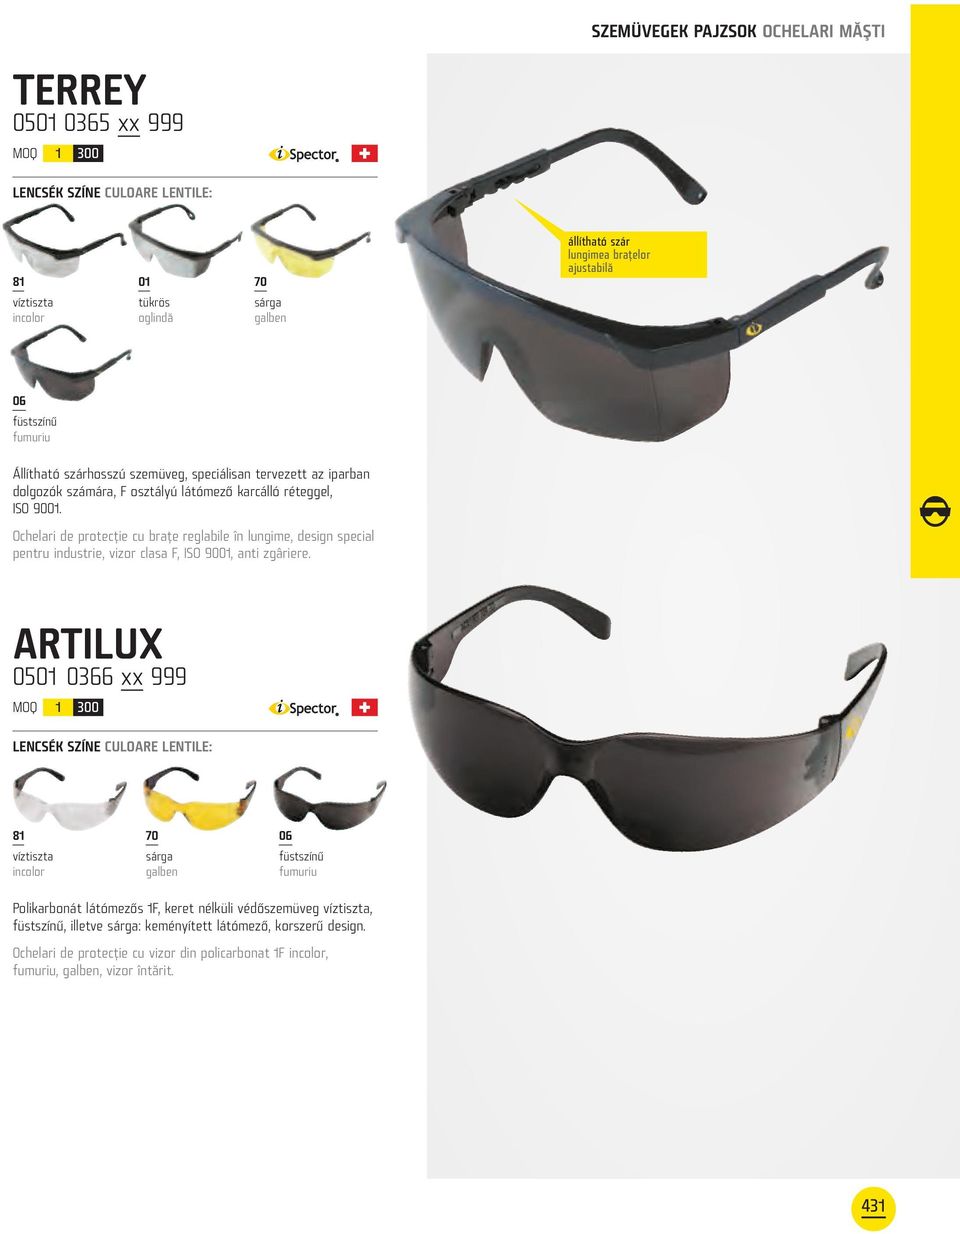 Ochelari de protecţie cu braţe reglabile în lungime, design special pentru industrie, vizor clasa F, ISO 9001, anti zgâriere.